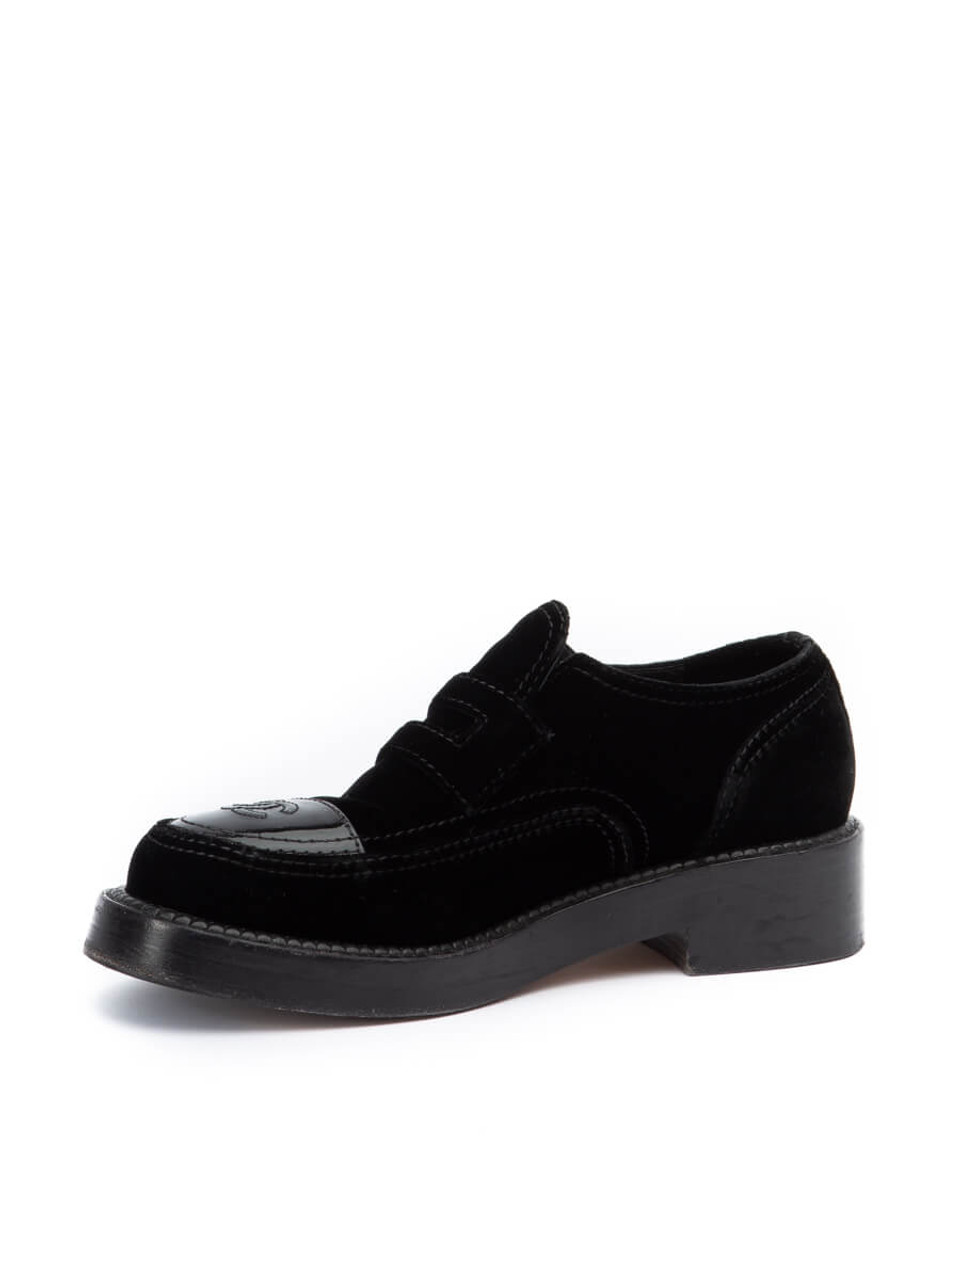 Chanel Women's Mocassin Loafers, Size 5.5 UK, Black Velvet